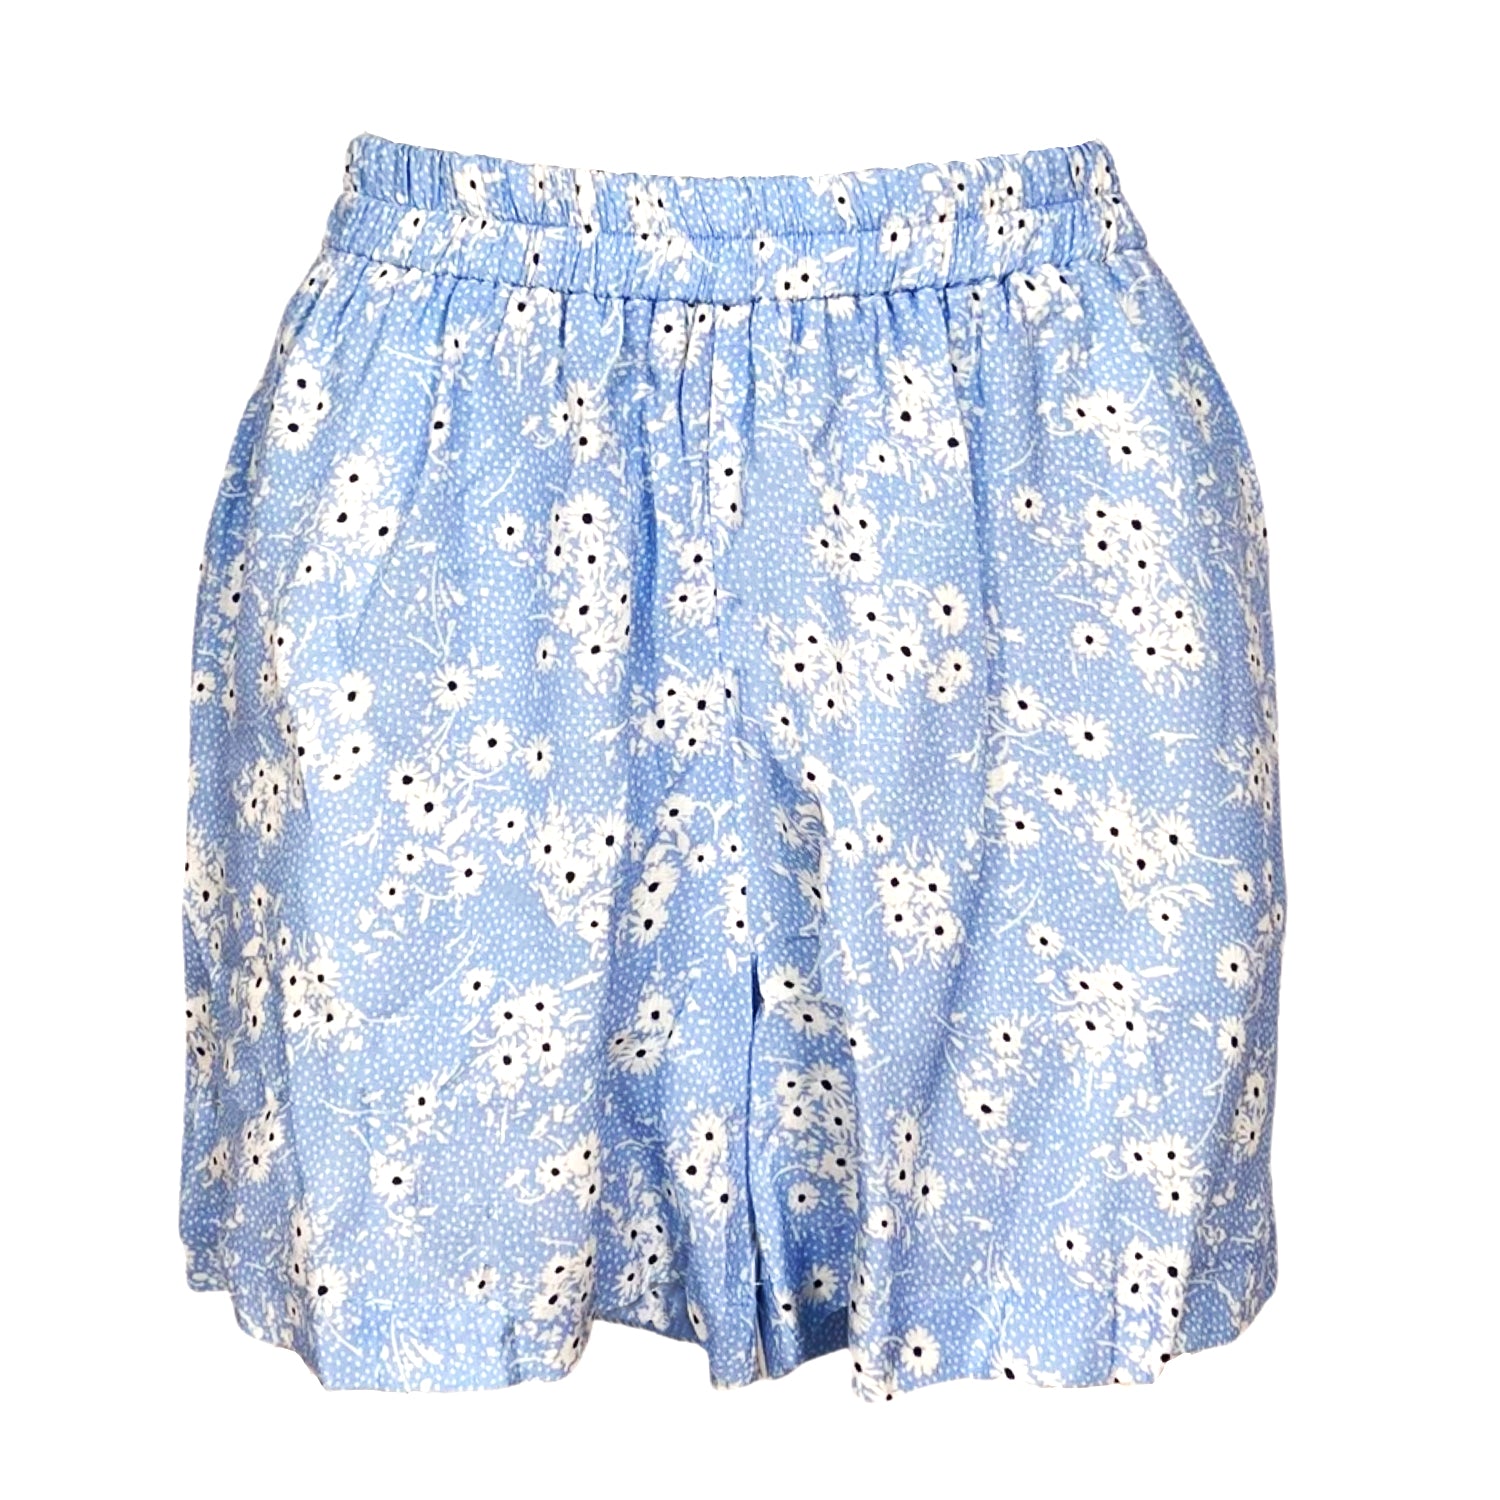 Boxer Linen Shorts - Floral Light Blue Print